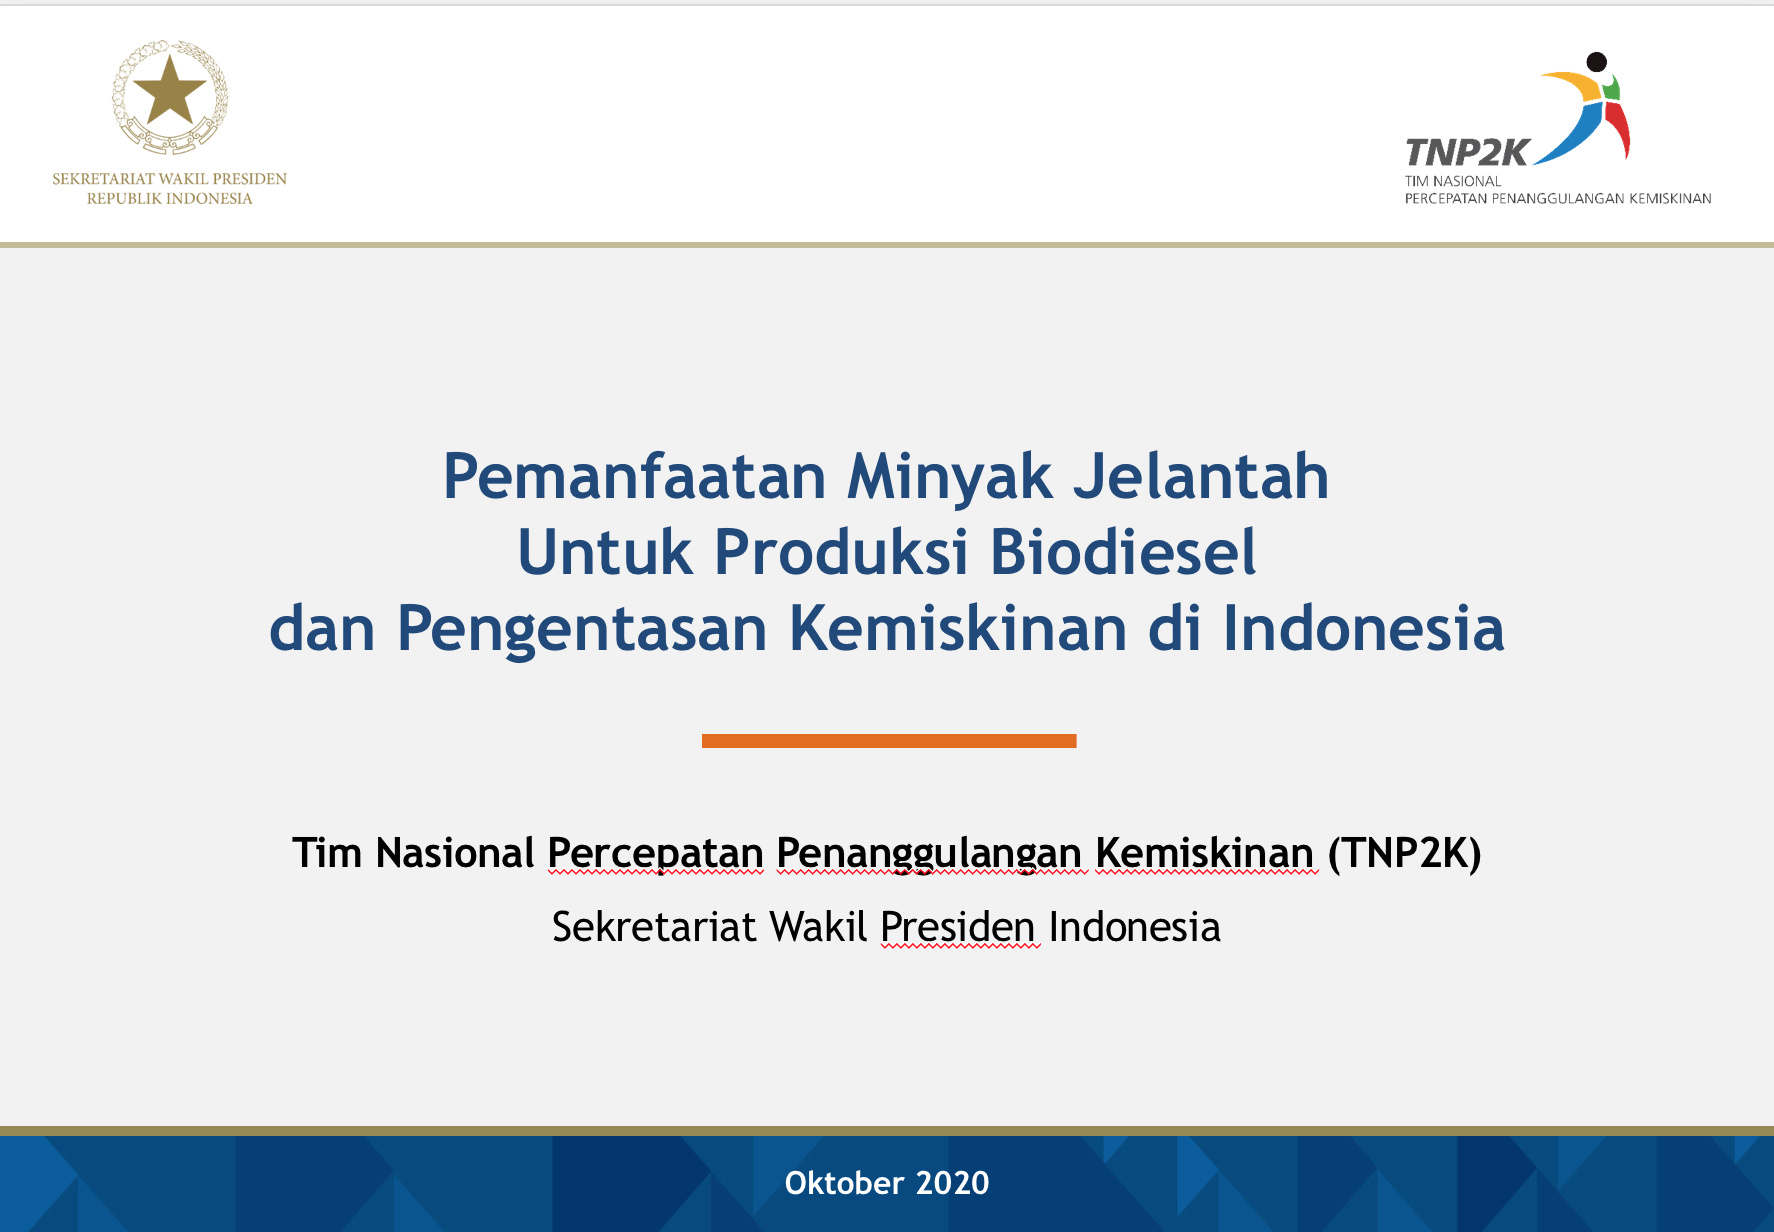 You are currently viewing Paparan Pemanfaatan Minyak Jelantah Untuk Produksi Biodiesel dan Pengentasan Kemiskinan di Indonesia